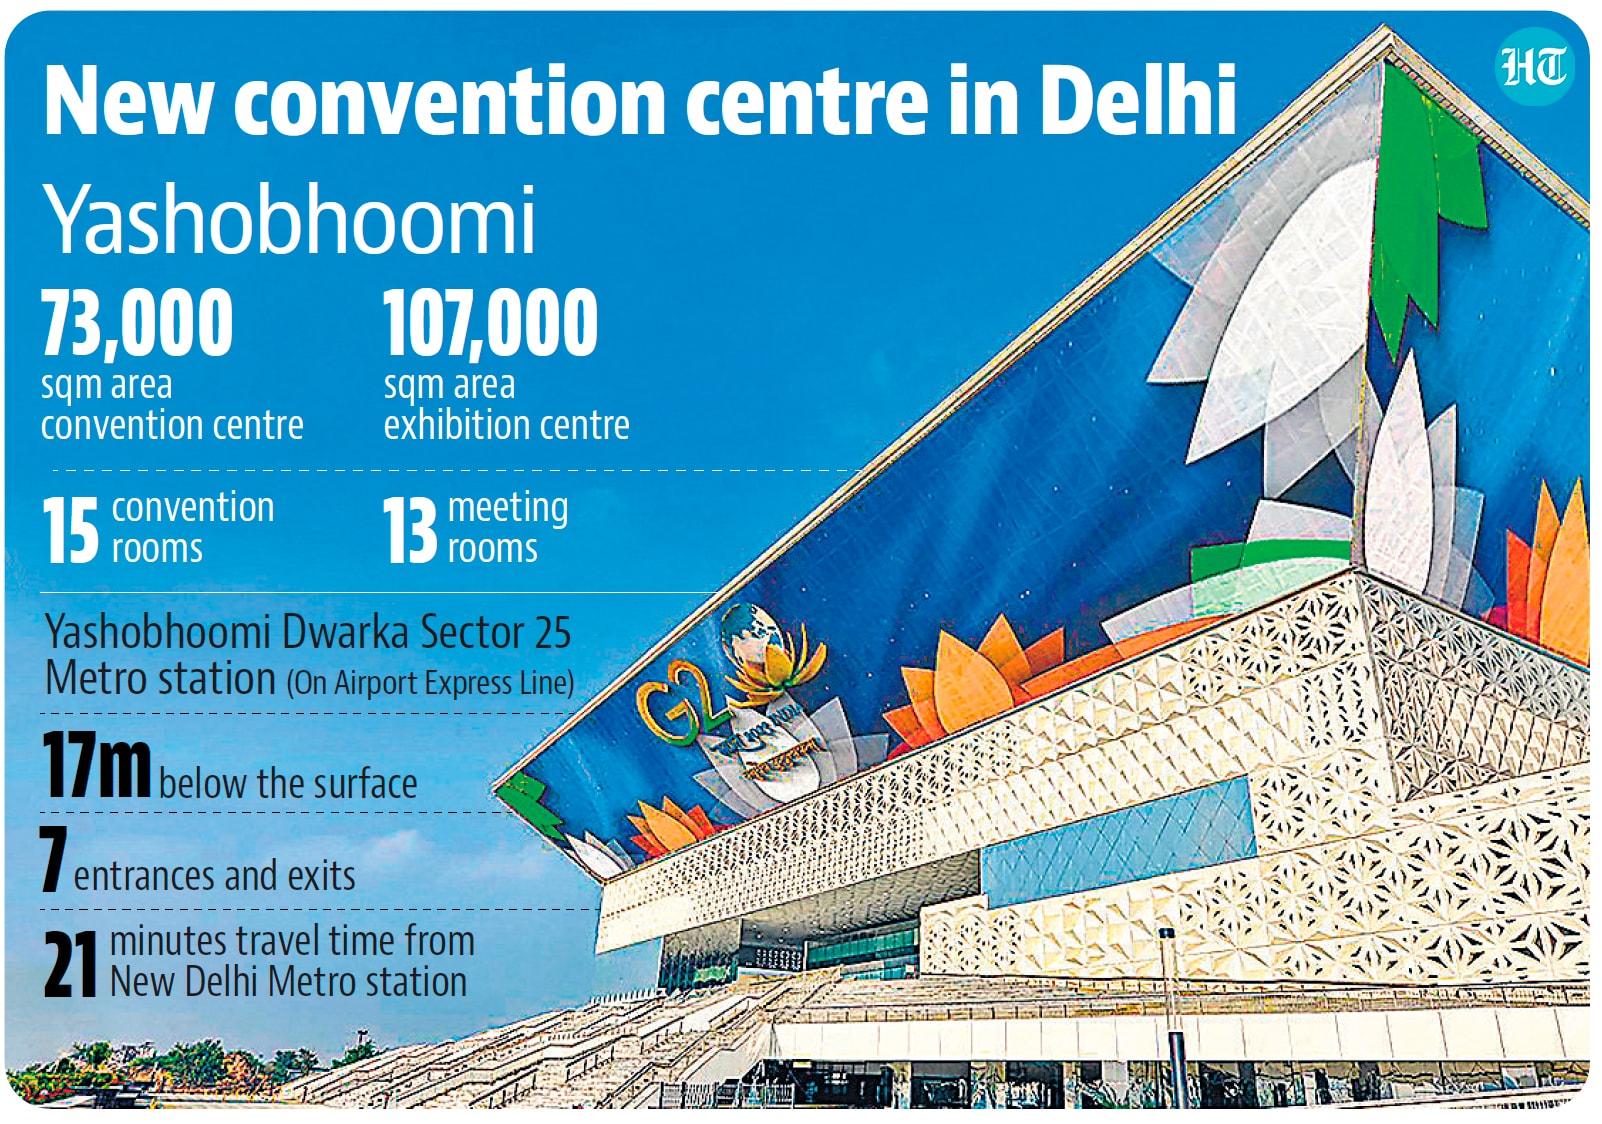 PM Modi inaugurates YashoBhoomi convention centre